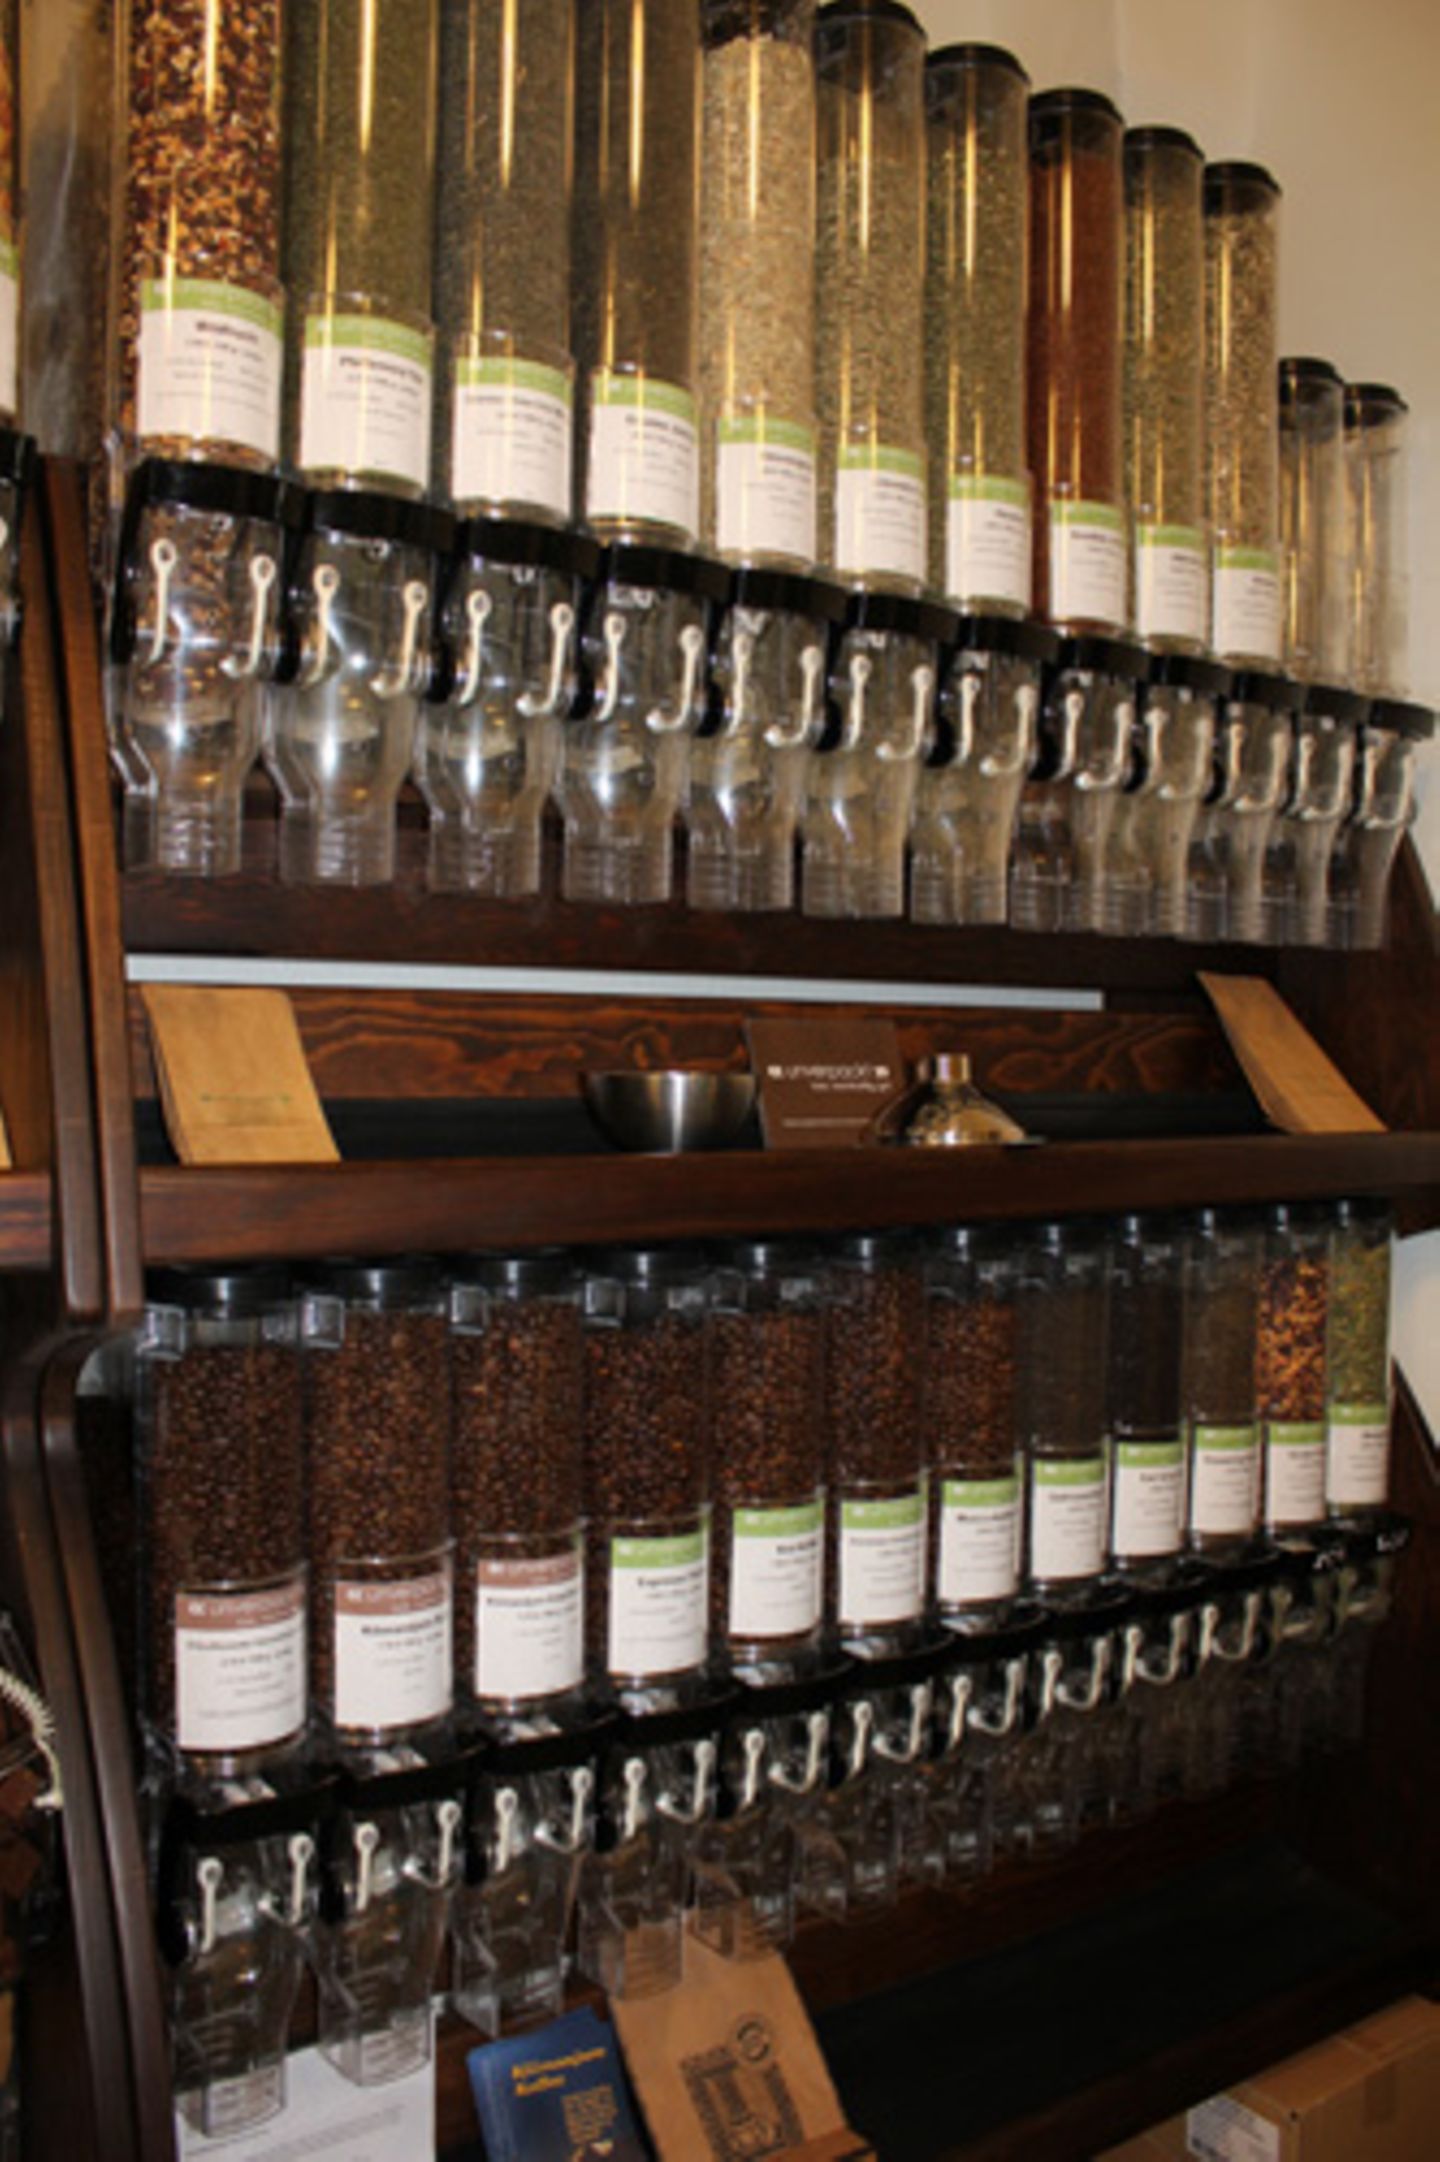 Von den sieben verschiedenen Kaffeesorten sind alle fair gehandelt, vier sind aus biologischem Anbau, einer ist entkoffeiniert.